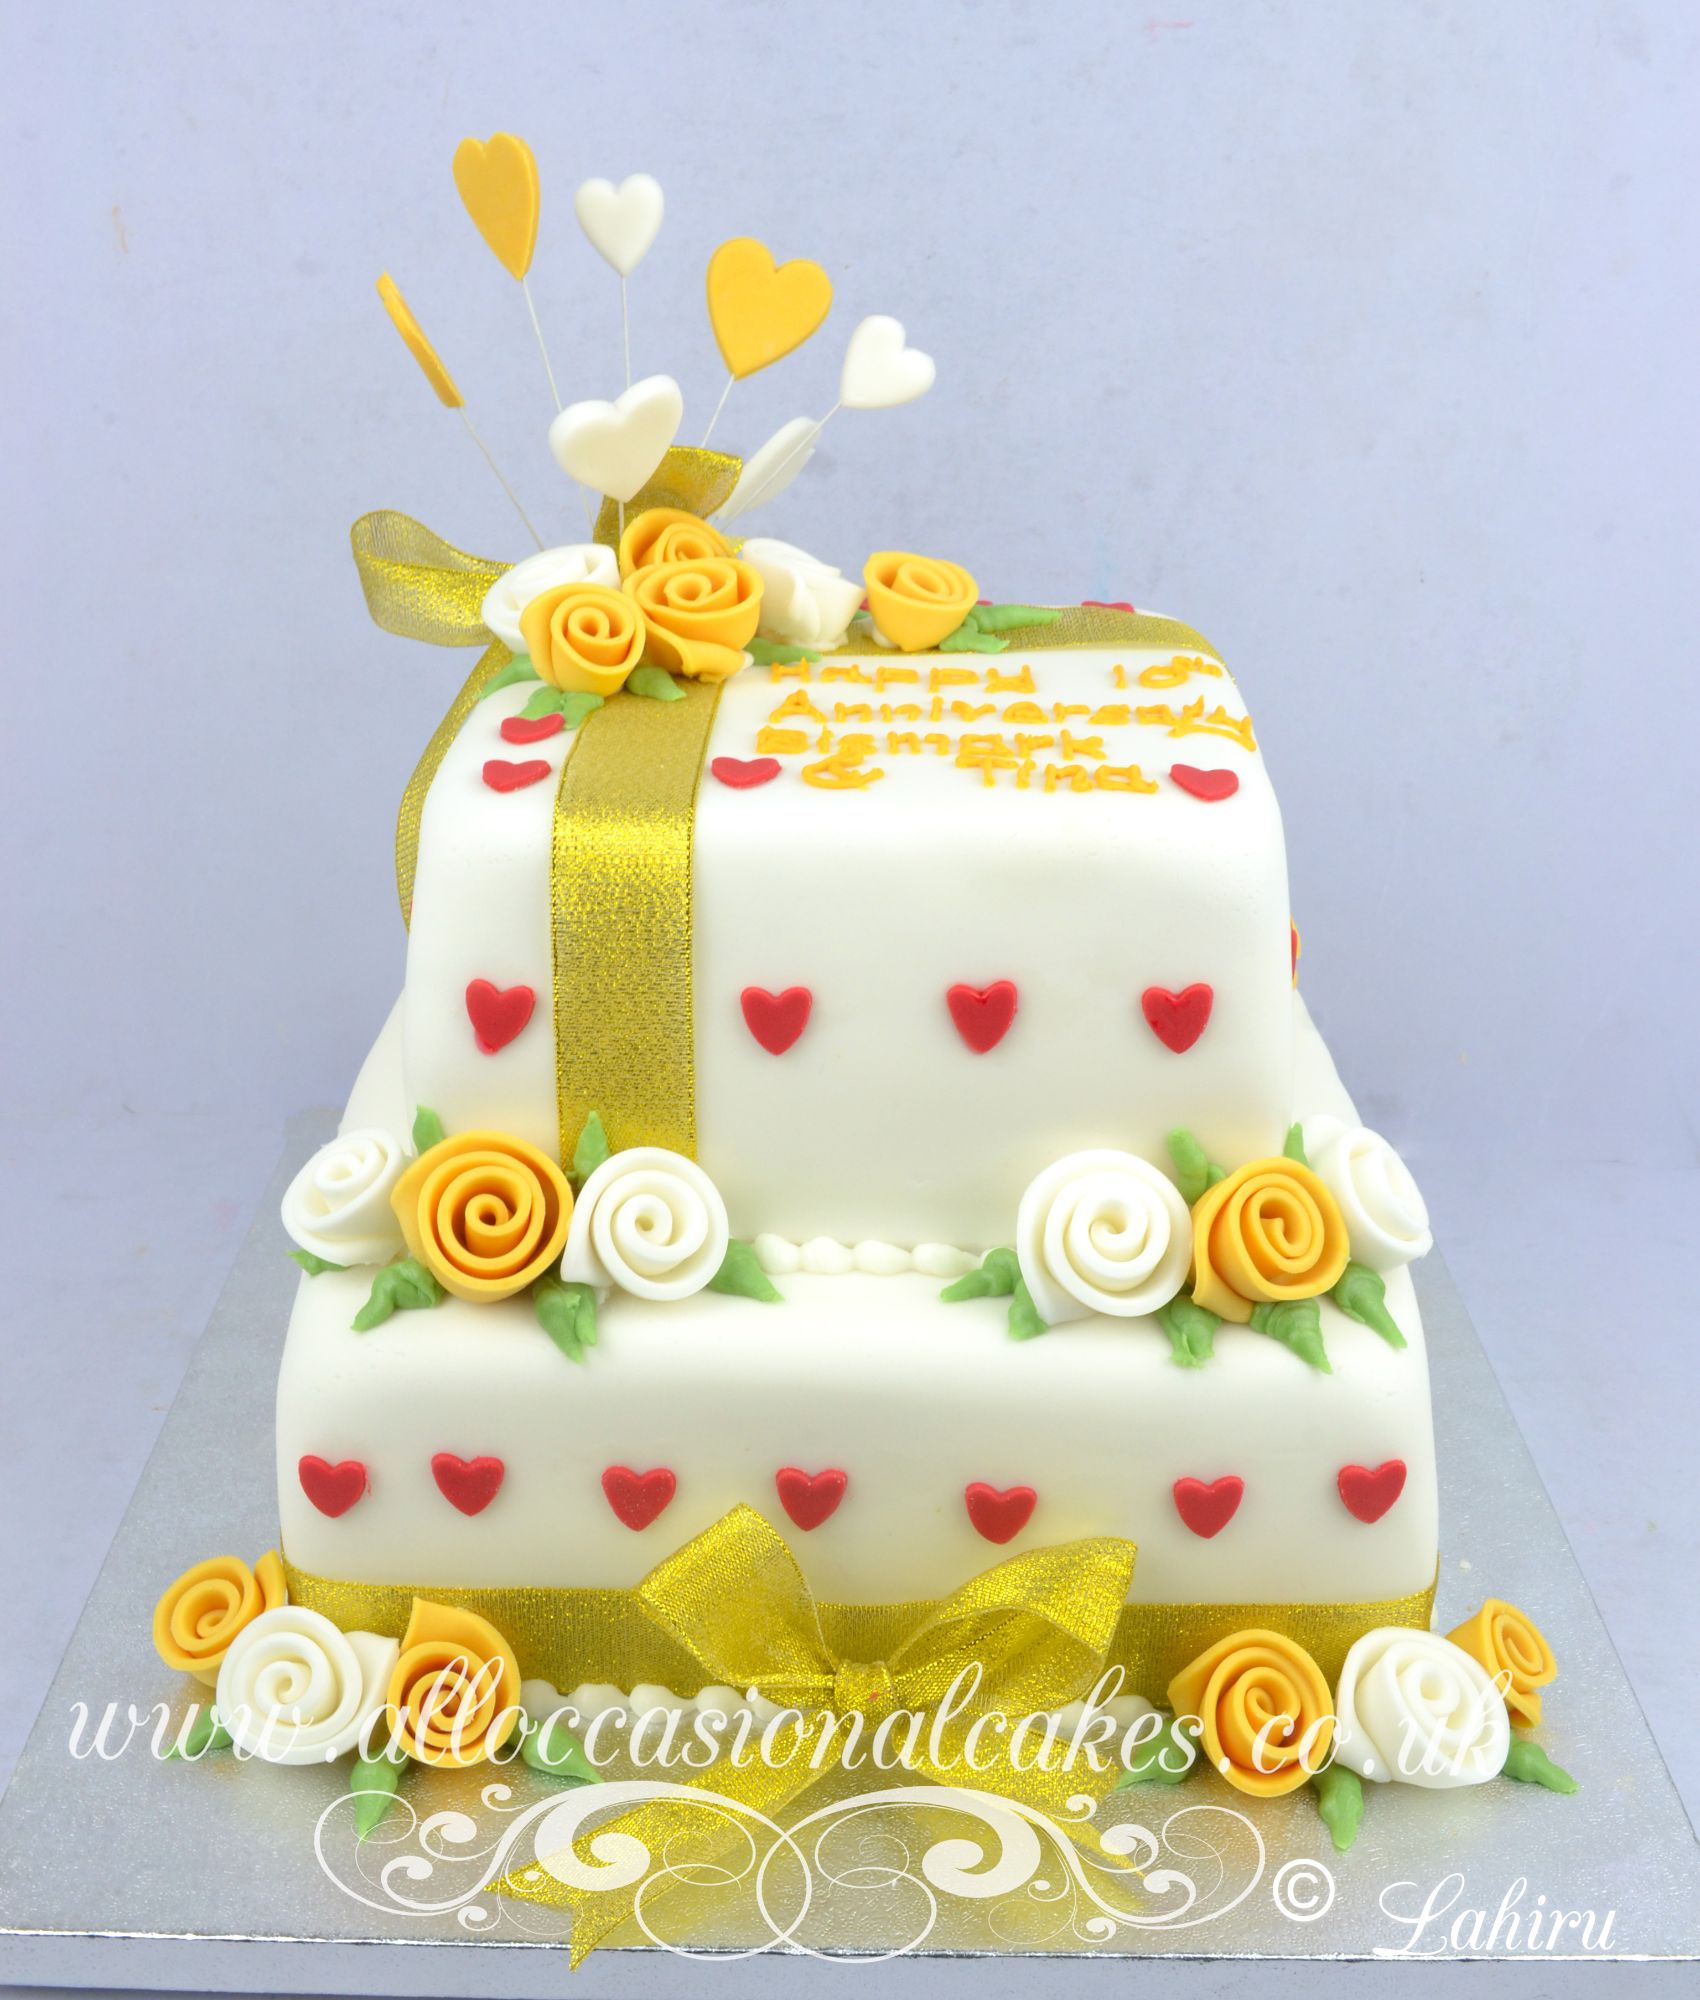  wedding anniversary cake